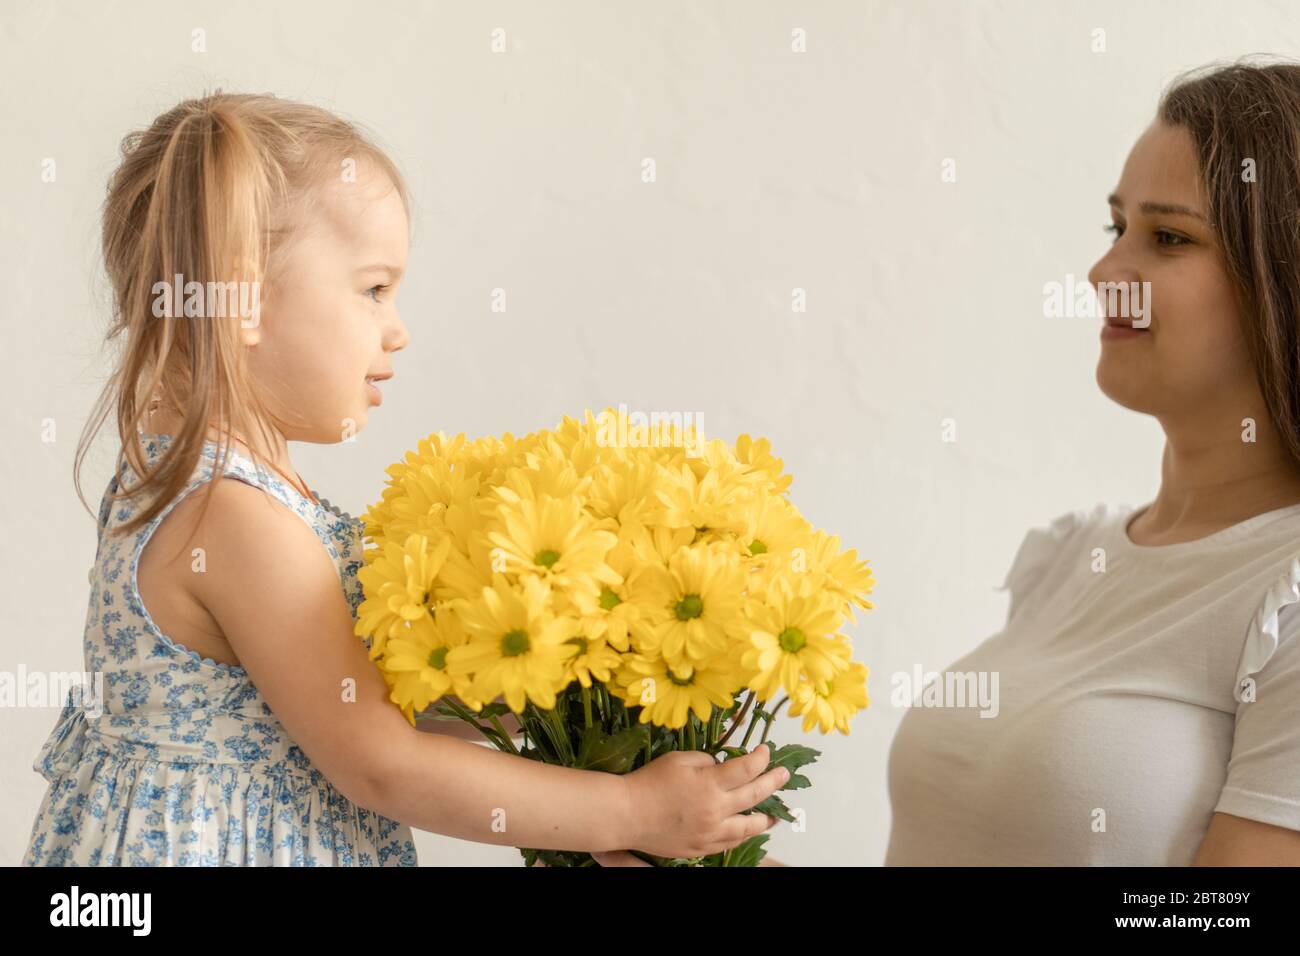 Mutterschaft, Muttertag, Geburtstag, Kindheit, Familienkonzept - close-up kleines Mädchen in blau bunten Kleid gratulieren und geben junge Mutter hell Stockfoto